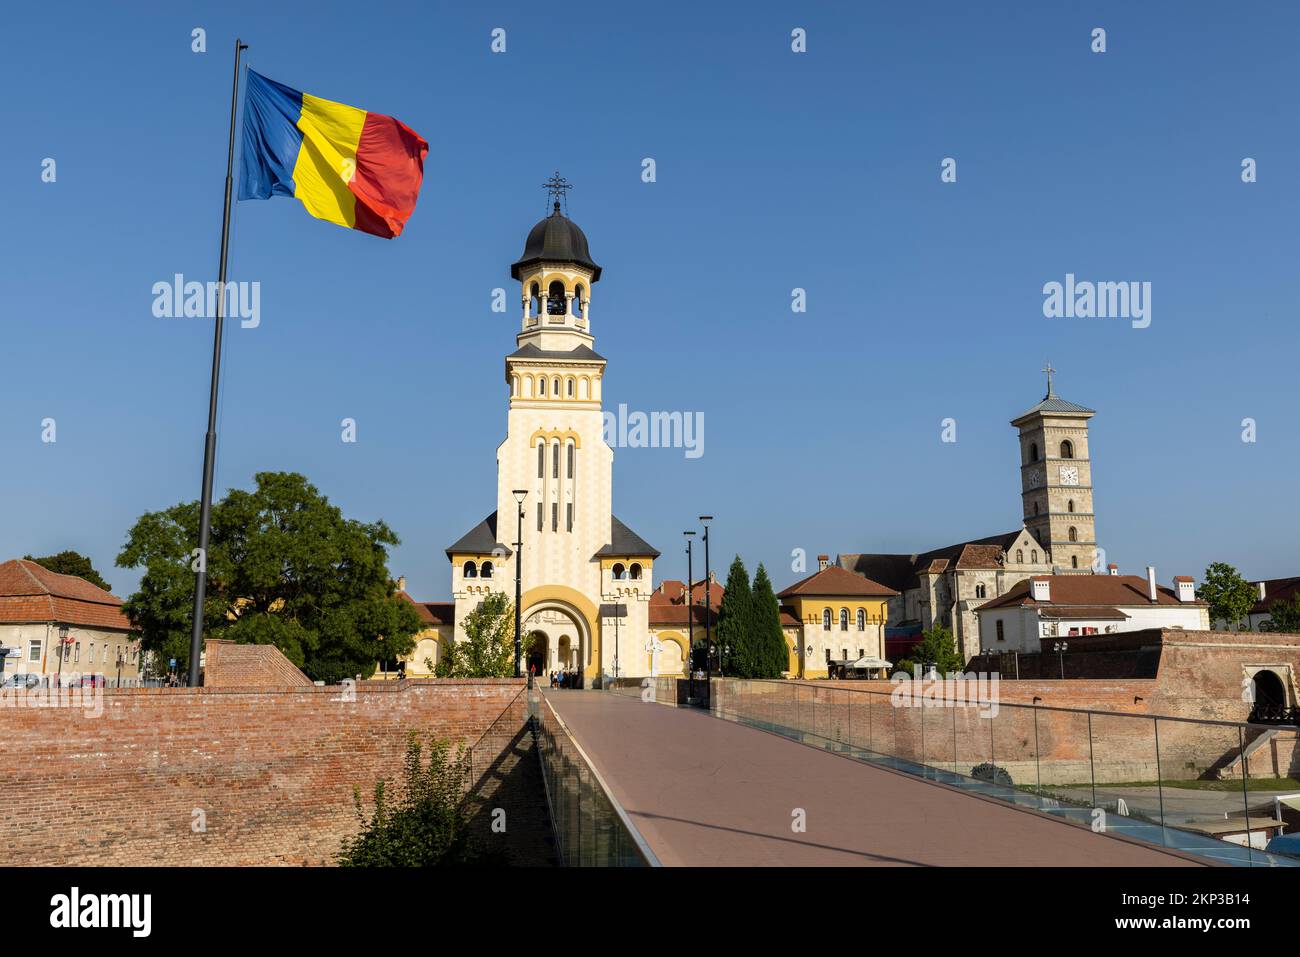 Alba Iulia citadel on the Mureș River in the historical region of Transylvania, Romania Stock Photo